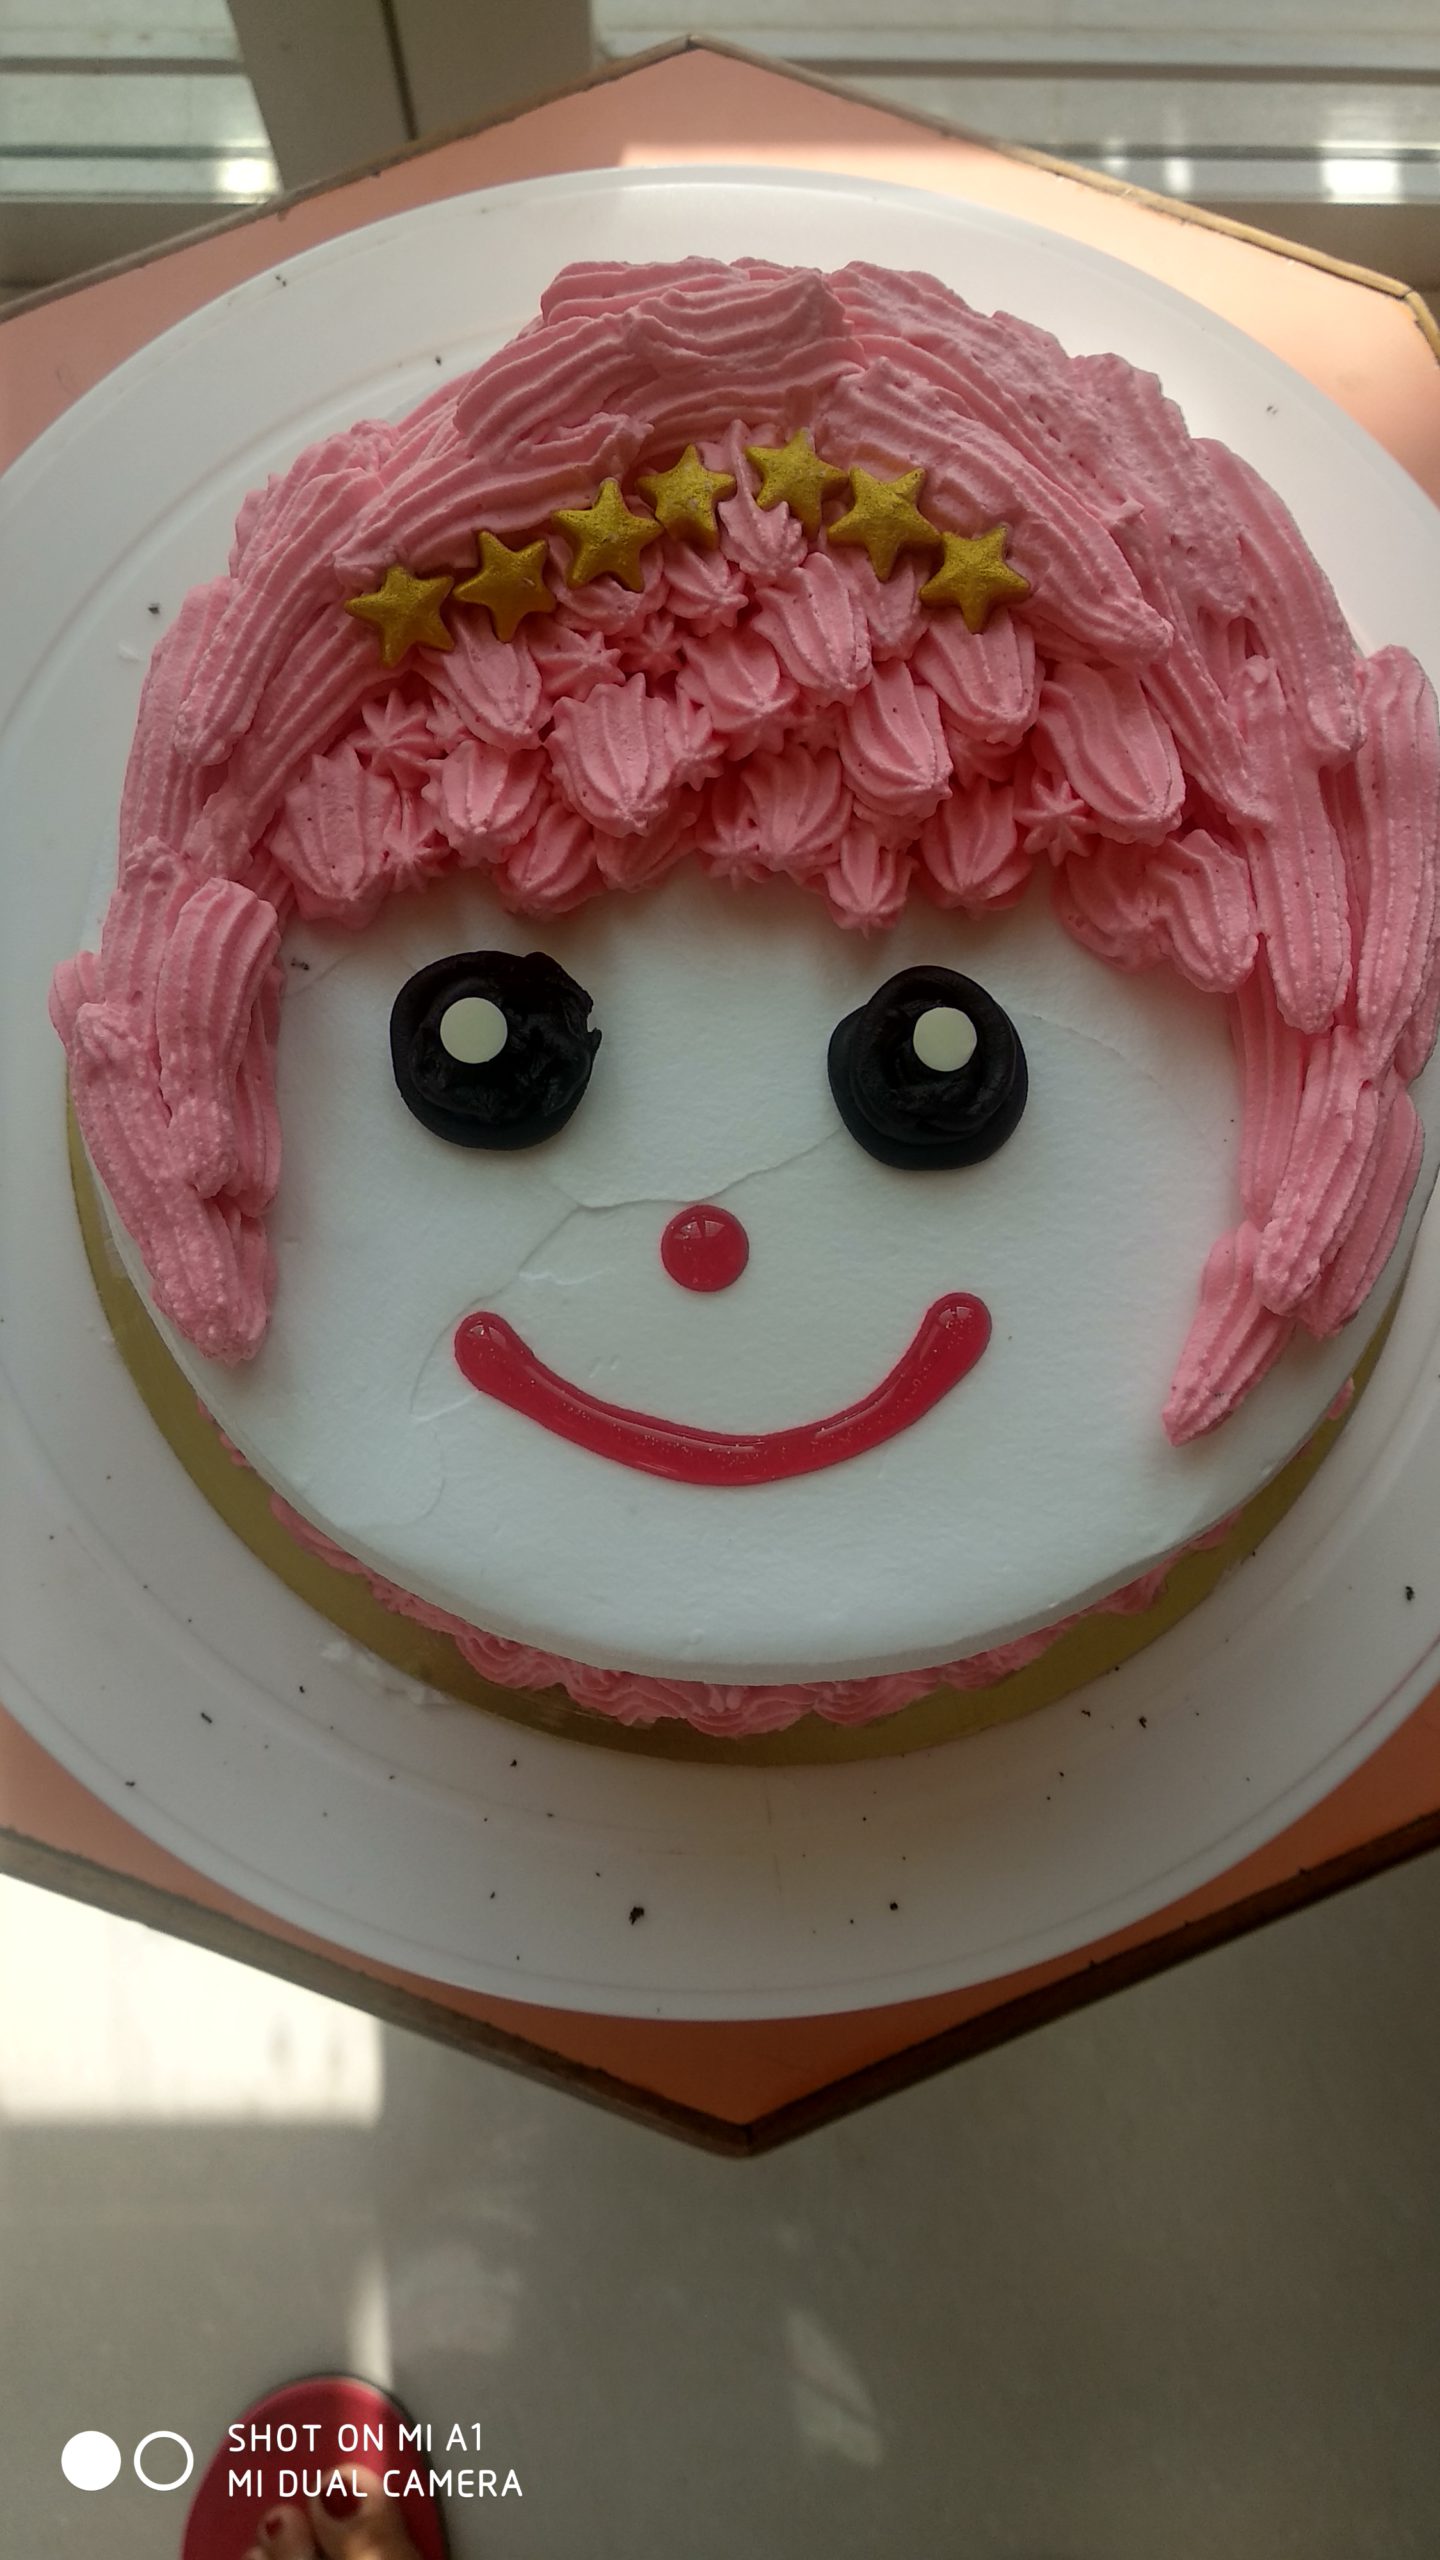 Dora the Explorer Cupcakes - Classy Girl Cupcakes